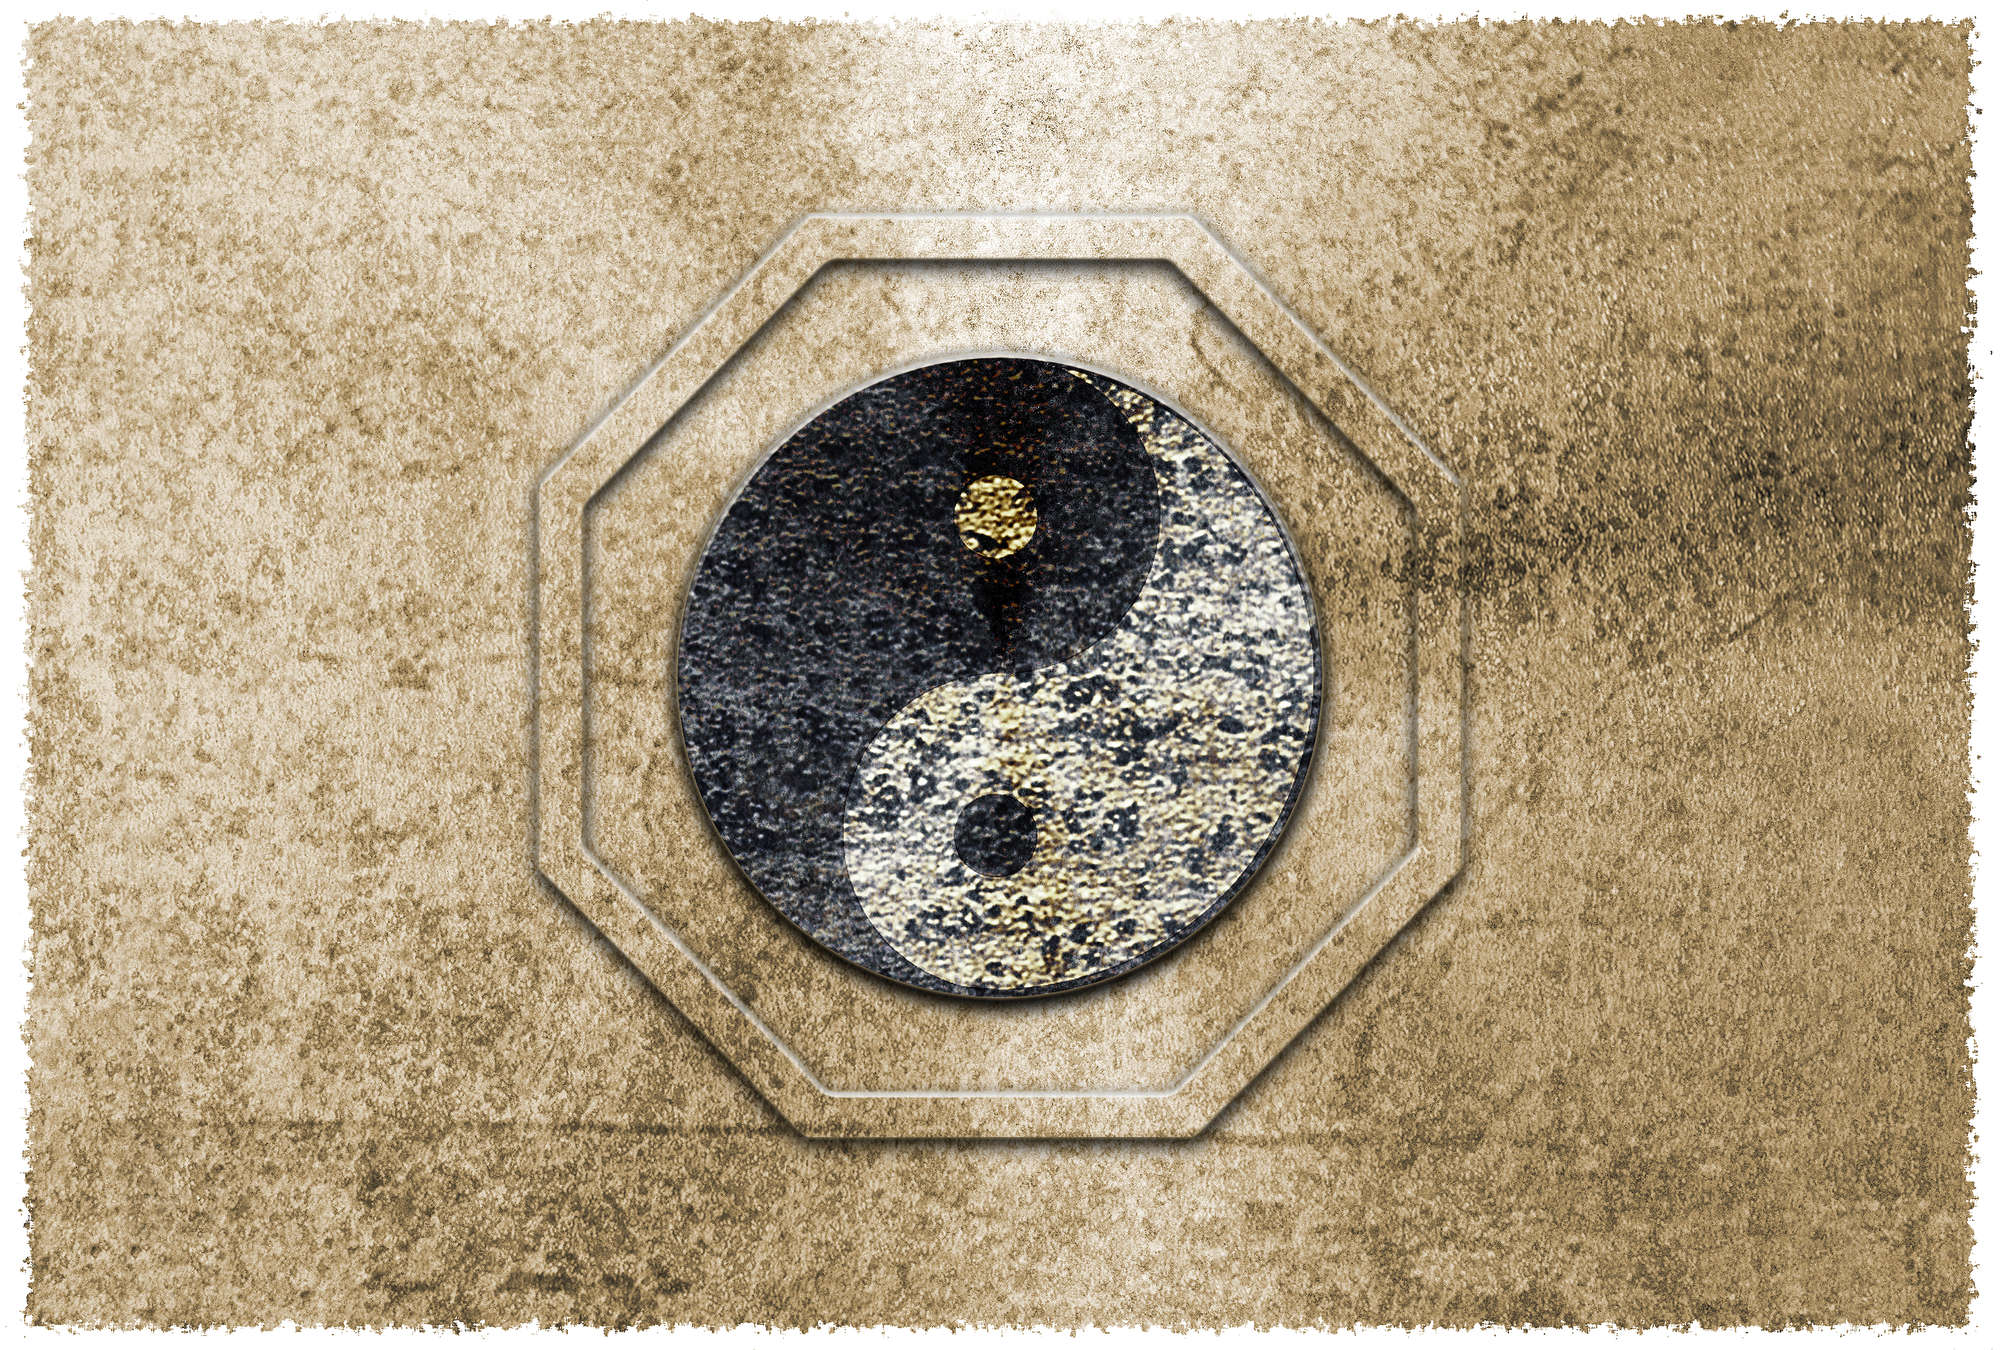             Papier peint Yin&Yang, symbole asiatique & accent doré - marron, noir, blanc
        